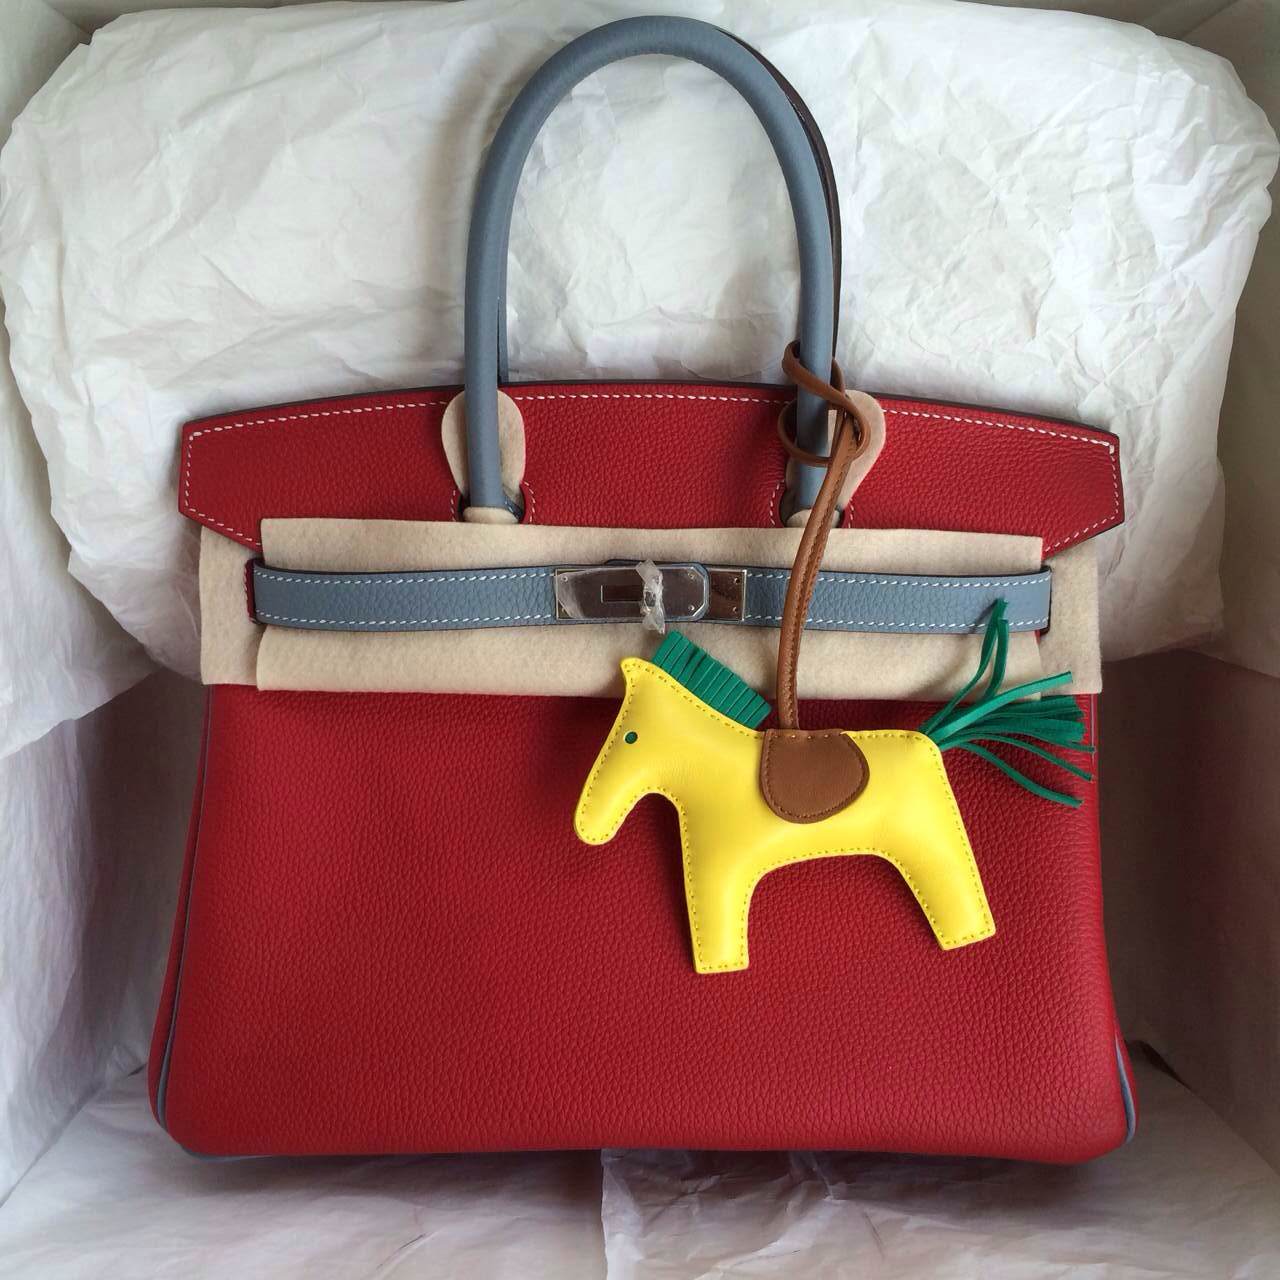 Fashion Hermes Birkin Bag 30cm Q5 Candy Red/J7 Blue Lin France Togo Leather